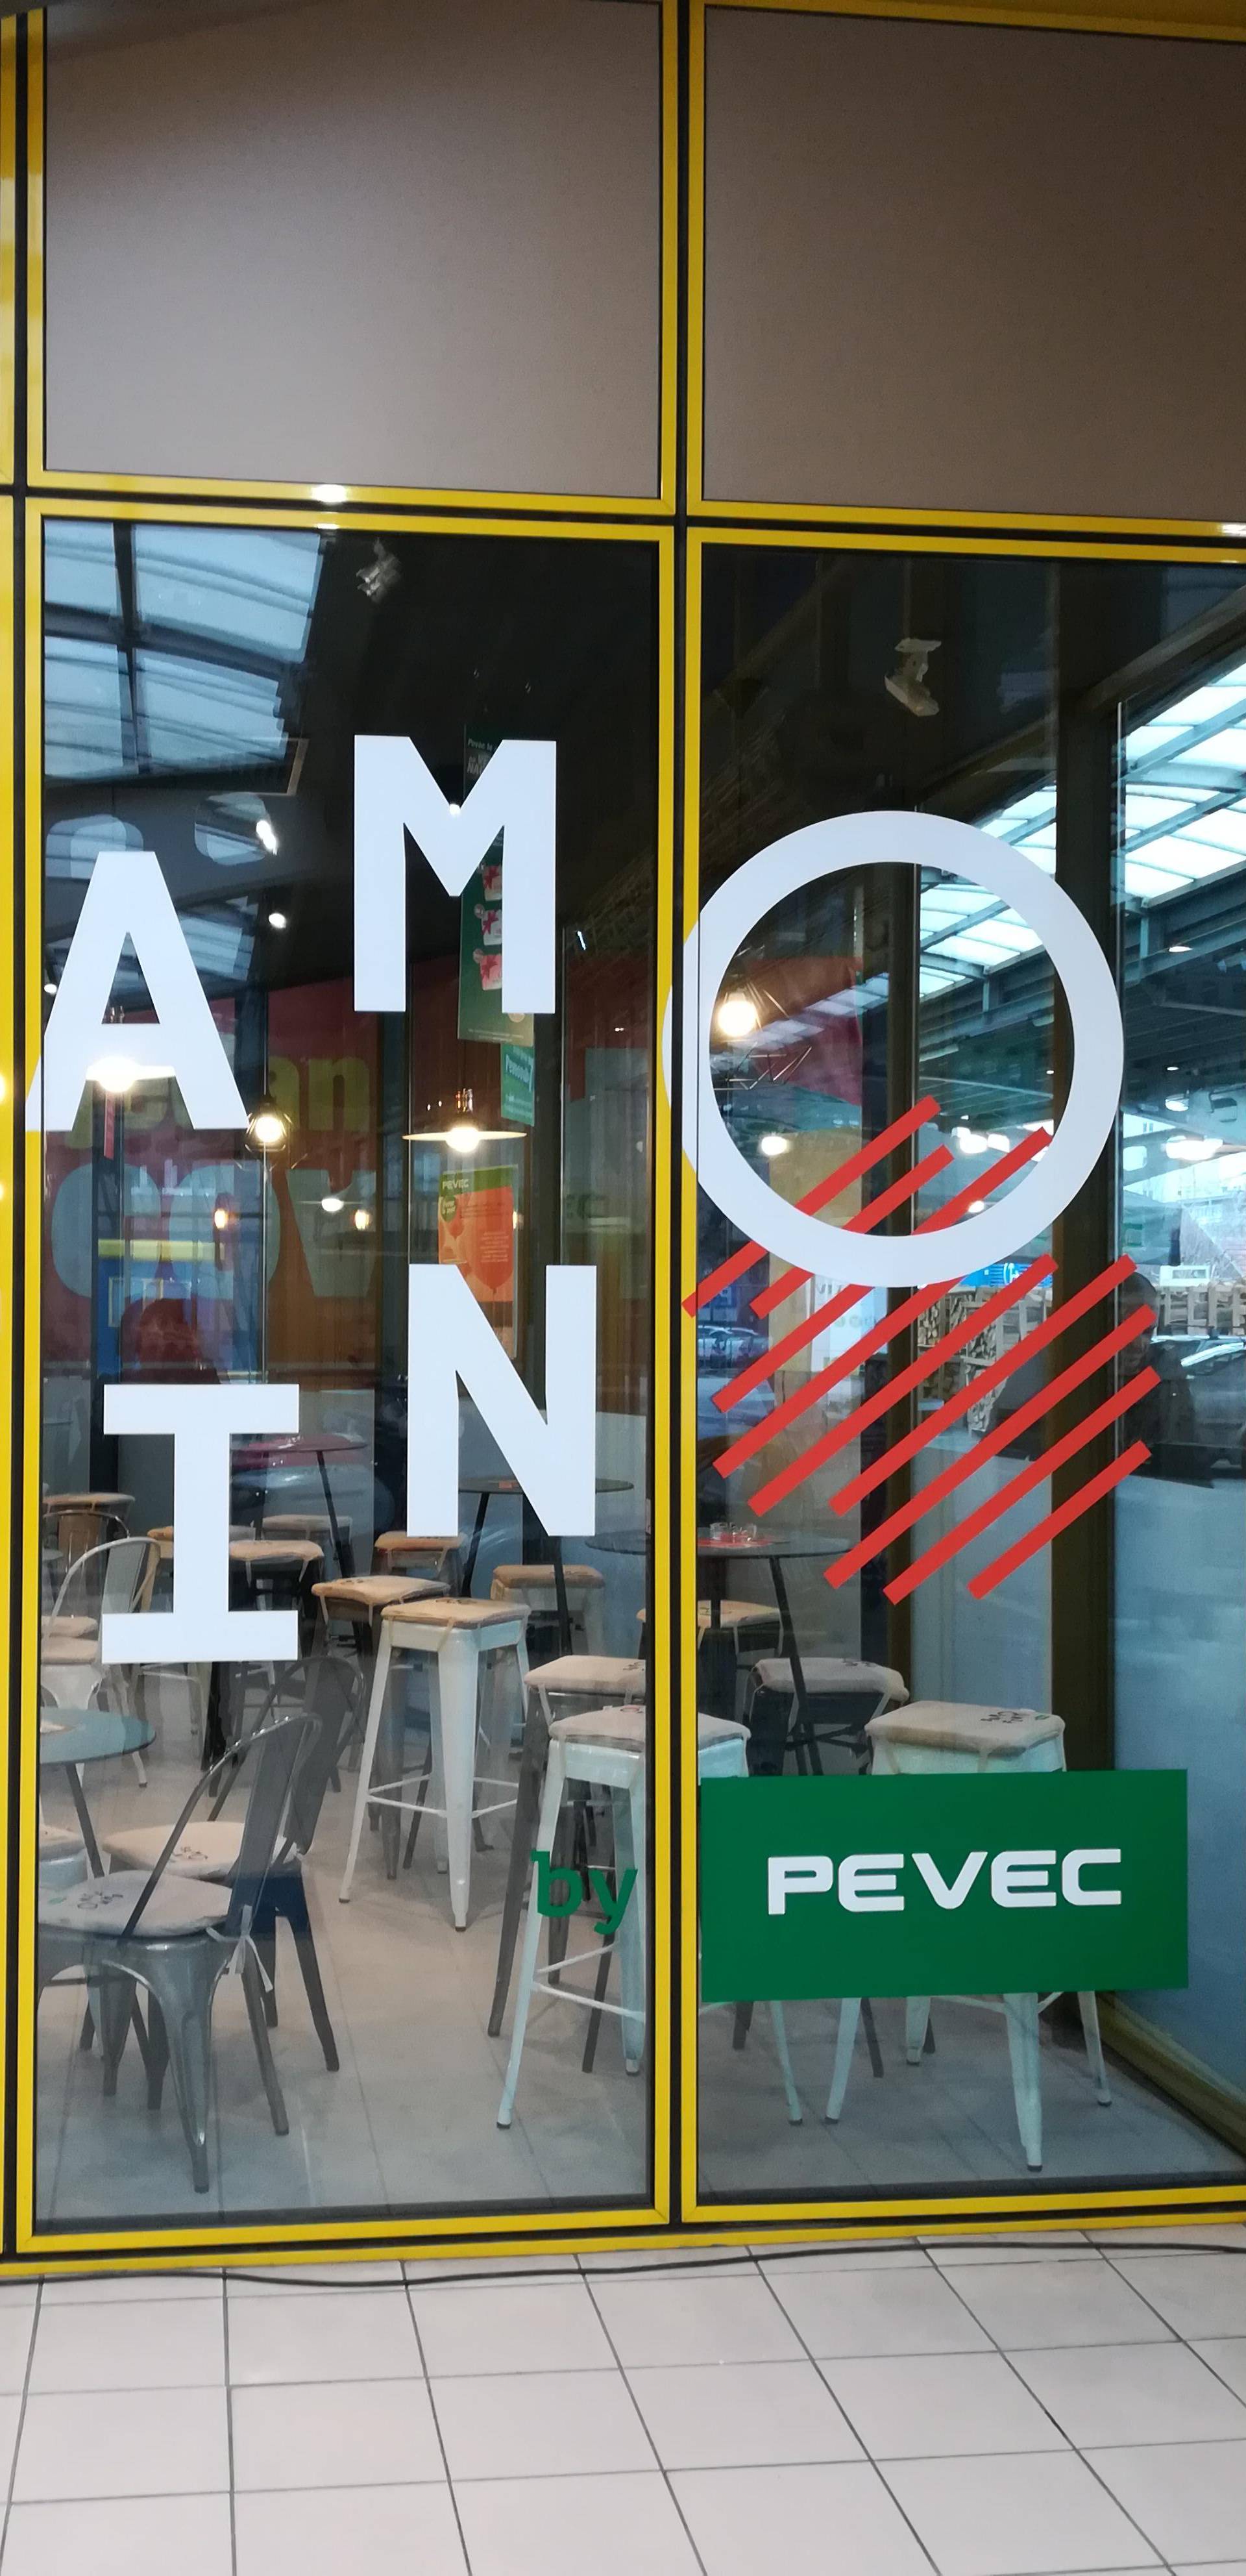 Pevec otvorio prvi kafić u Zagrebu "Samofino"